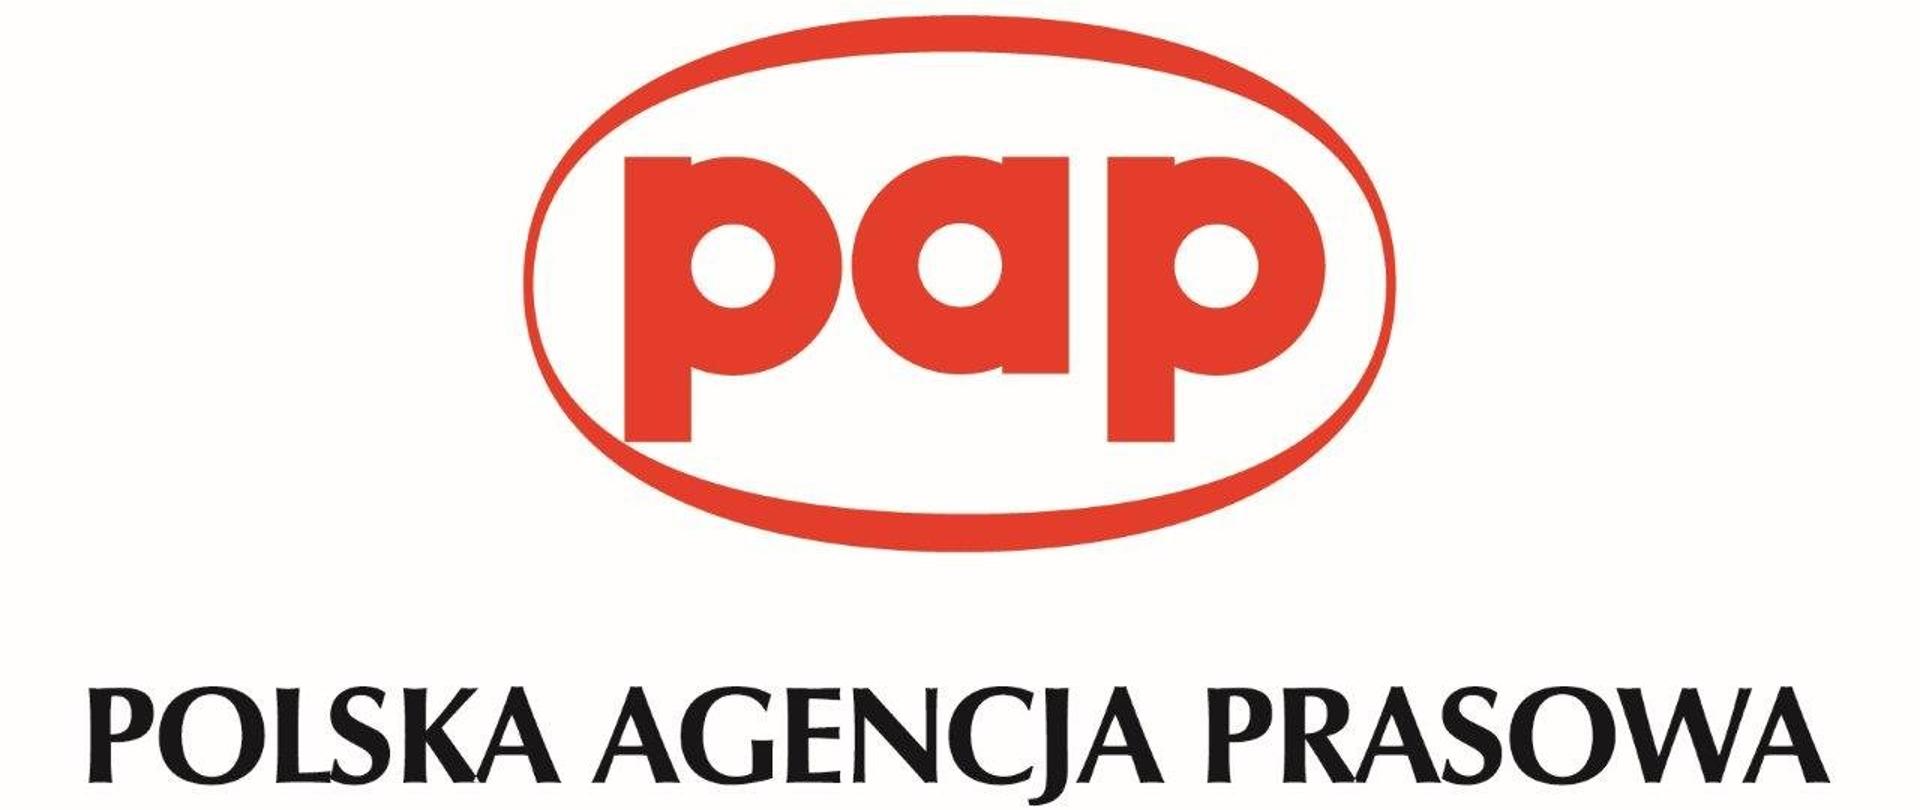 logo w poziomie. na górze czerwony napis "pap" w czerwonej elipsie. Pod nim napis "Polska Agencja Prasowa"